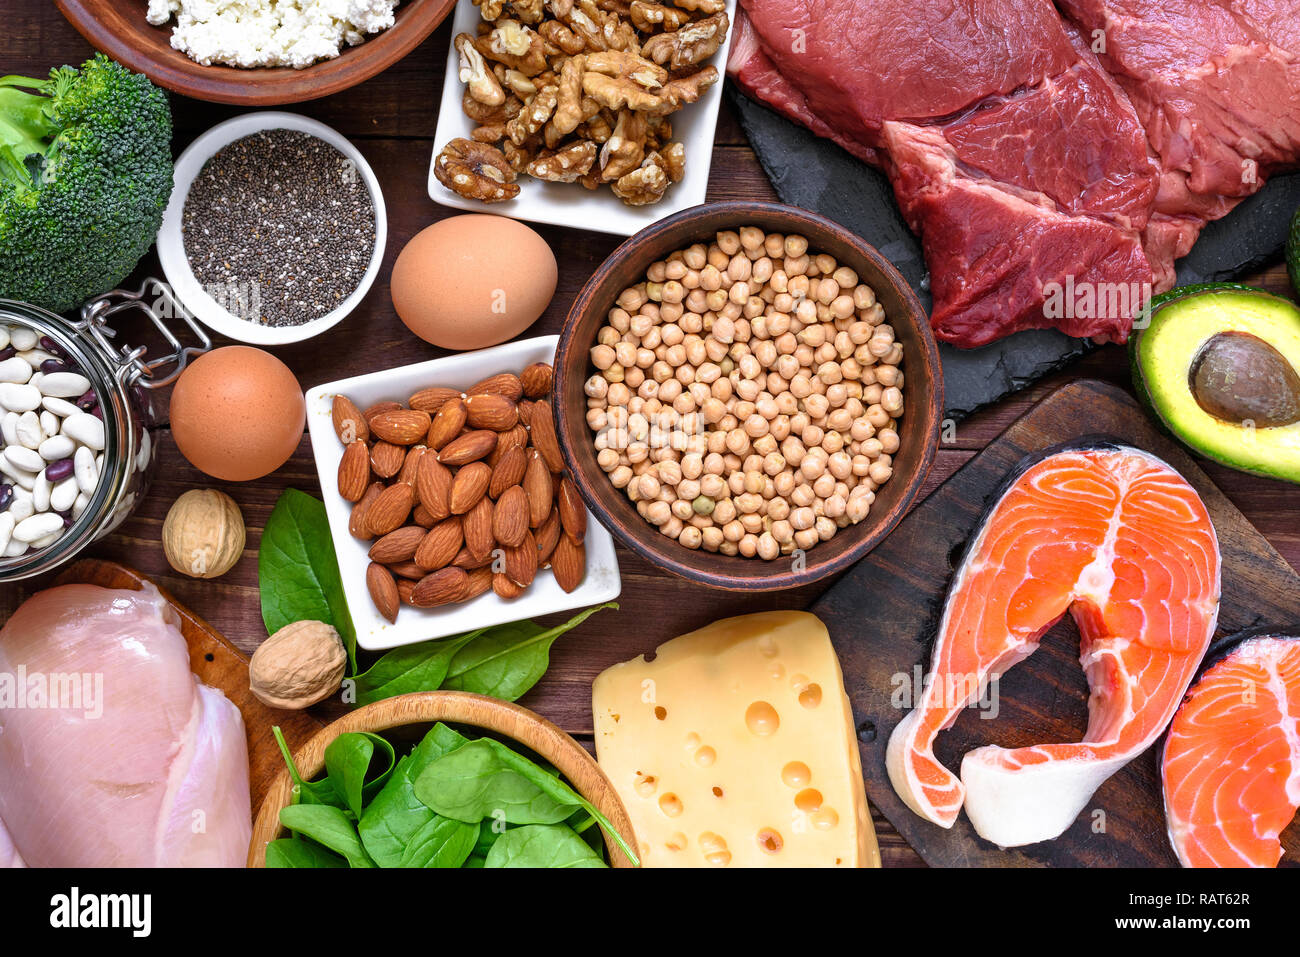 Proteinreiche Lebensmittel - Fisch, Fleisch, Geflügel, Nüsse, Eier und Gemüse. Gesunde Ernährung und Diät Konzept. top View Stockfoto